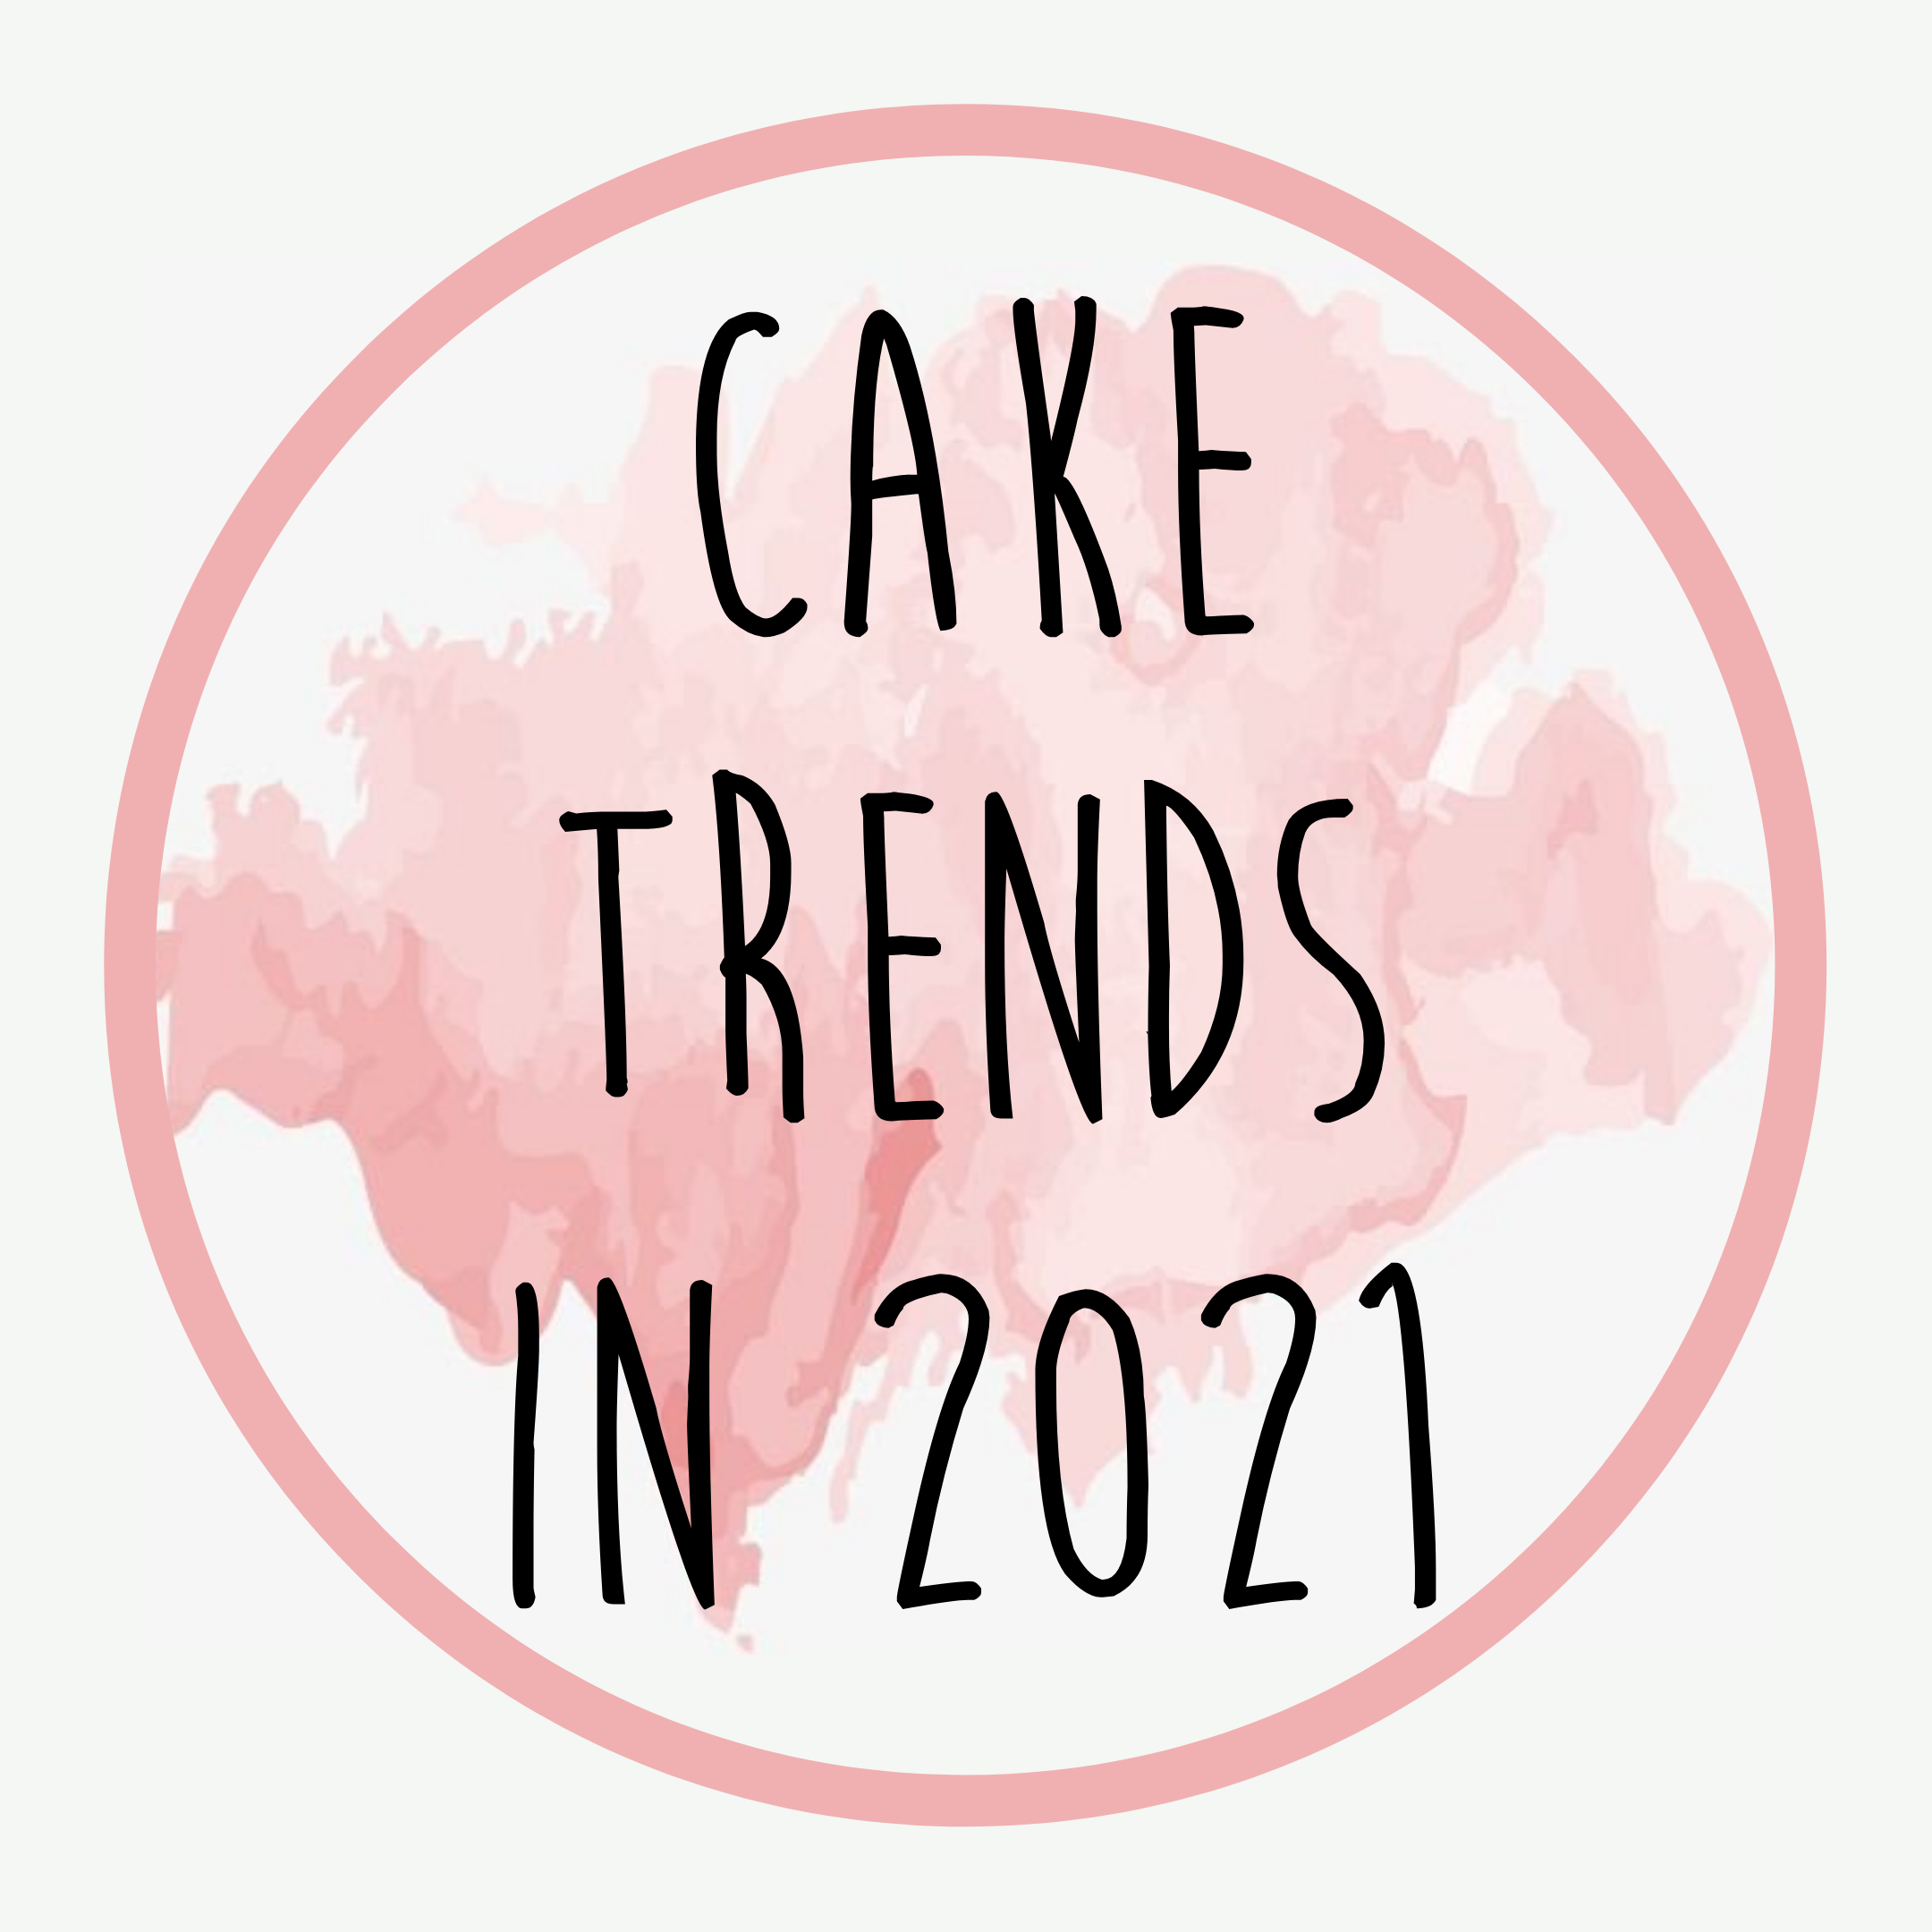 Cake trends in 2021